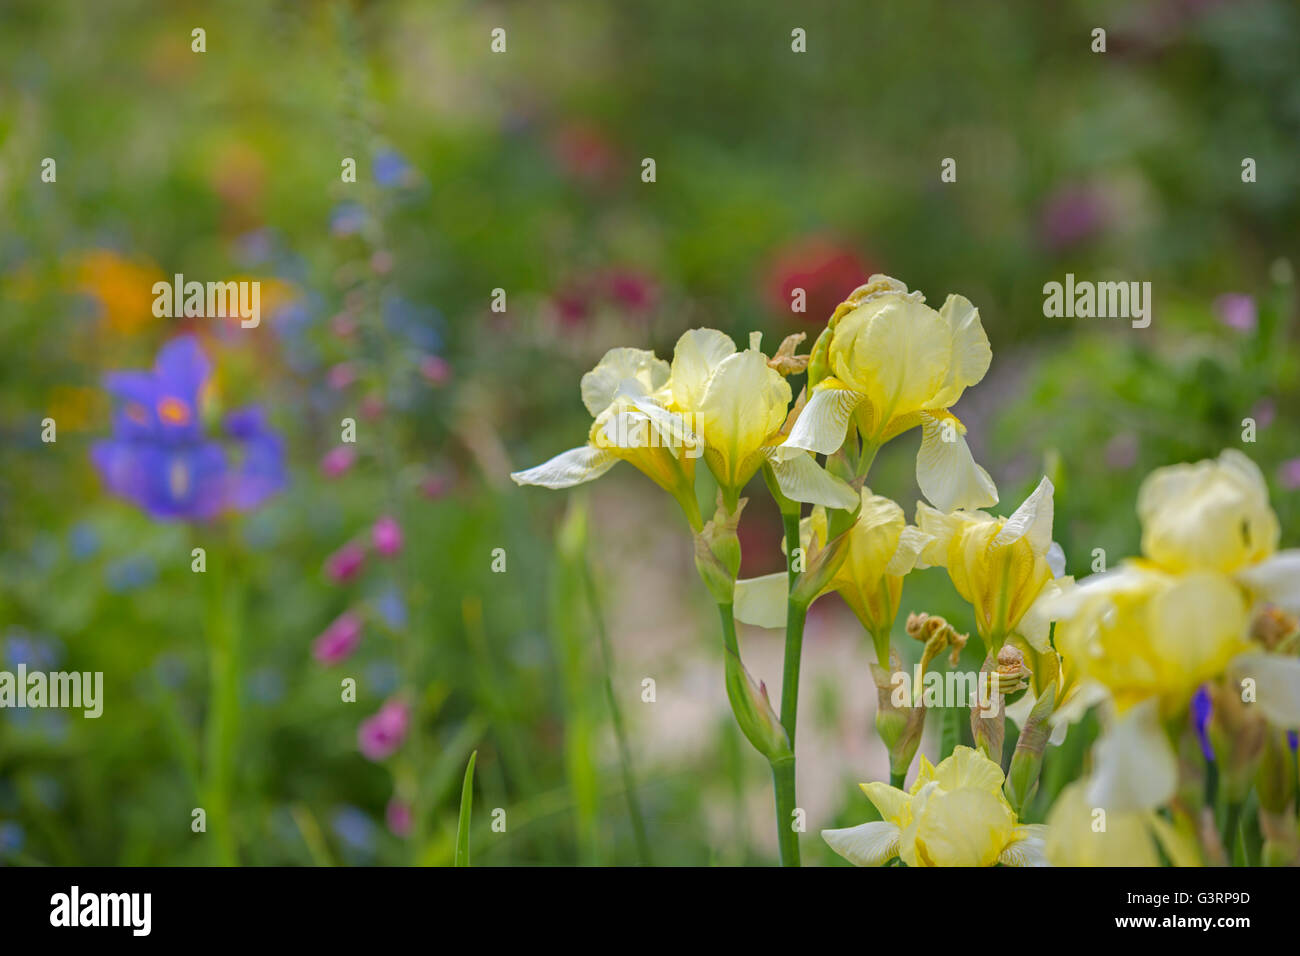 Yellow Iris flower. Stock Photo